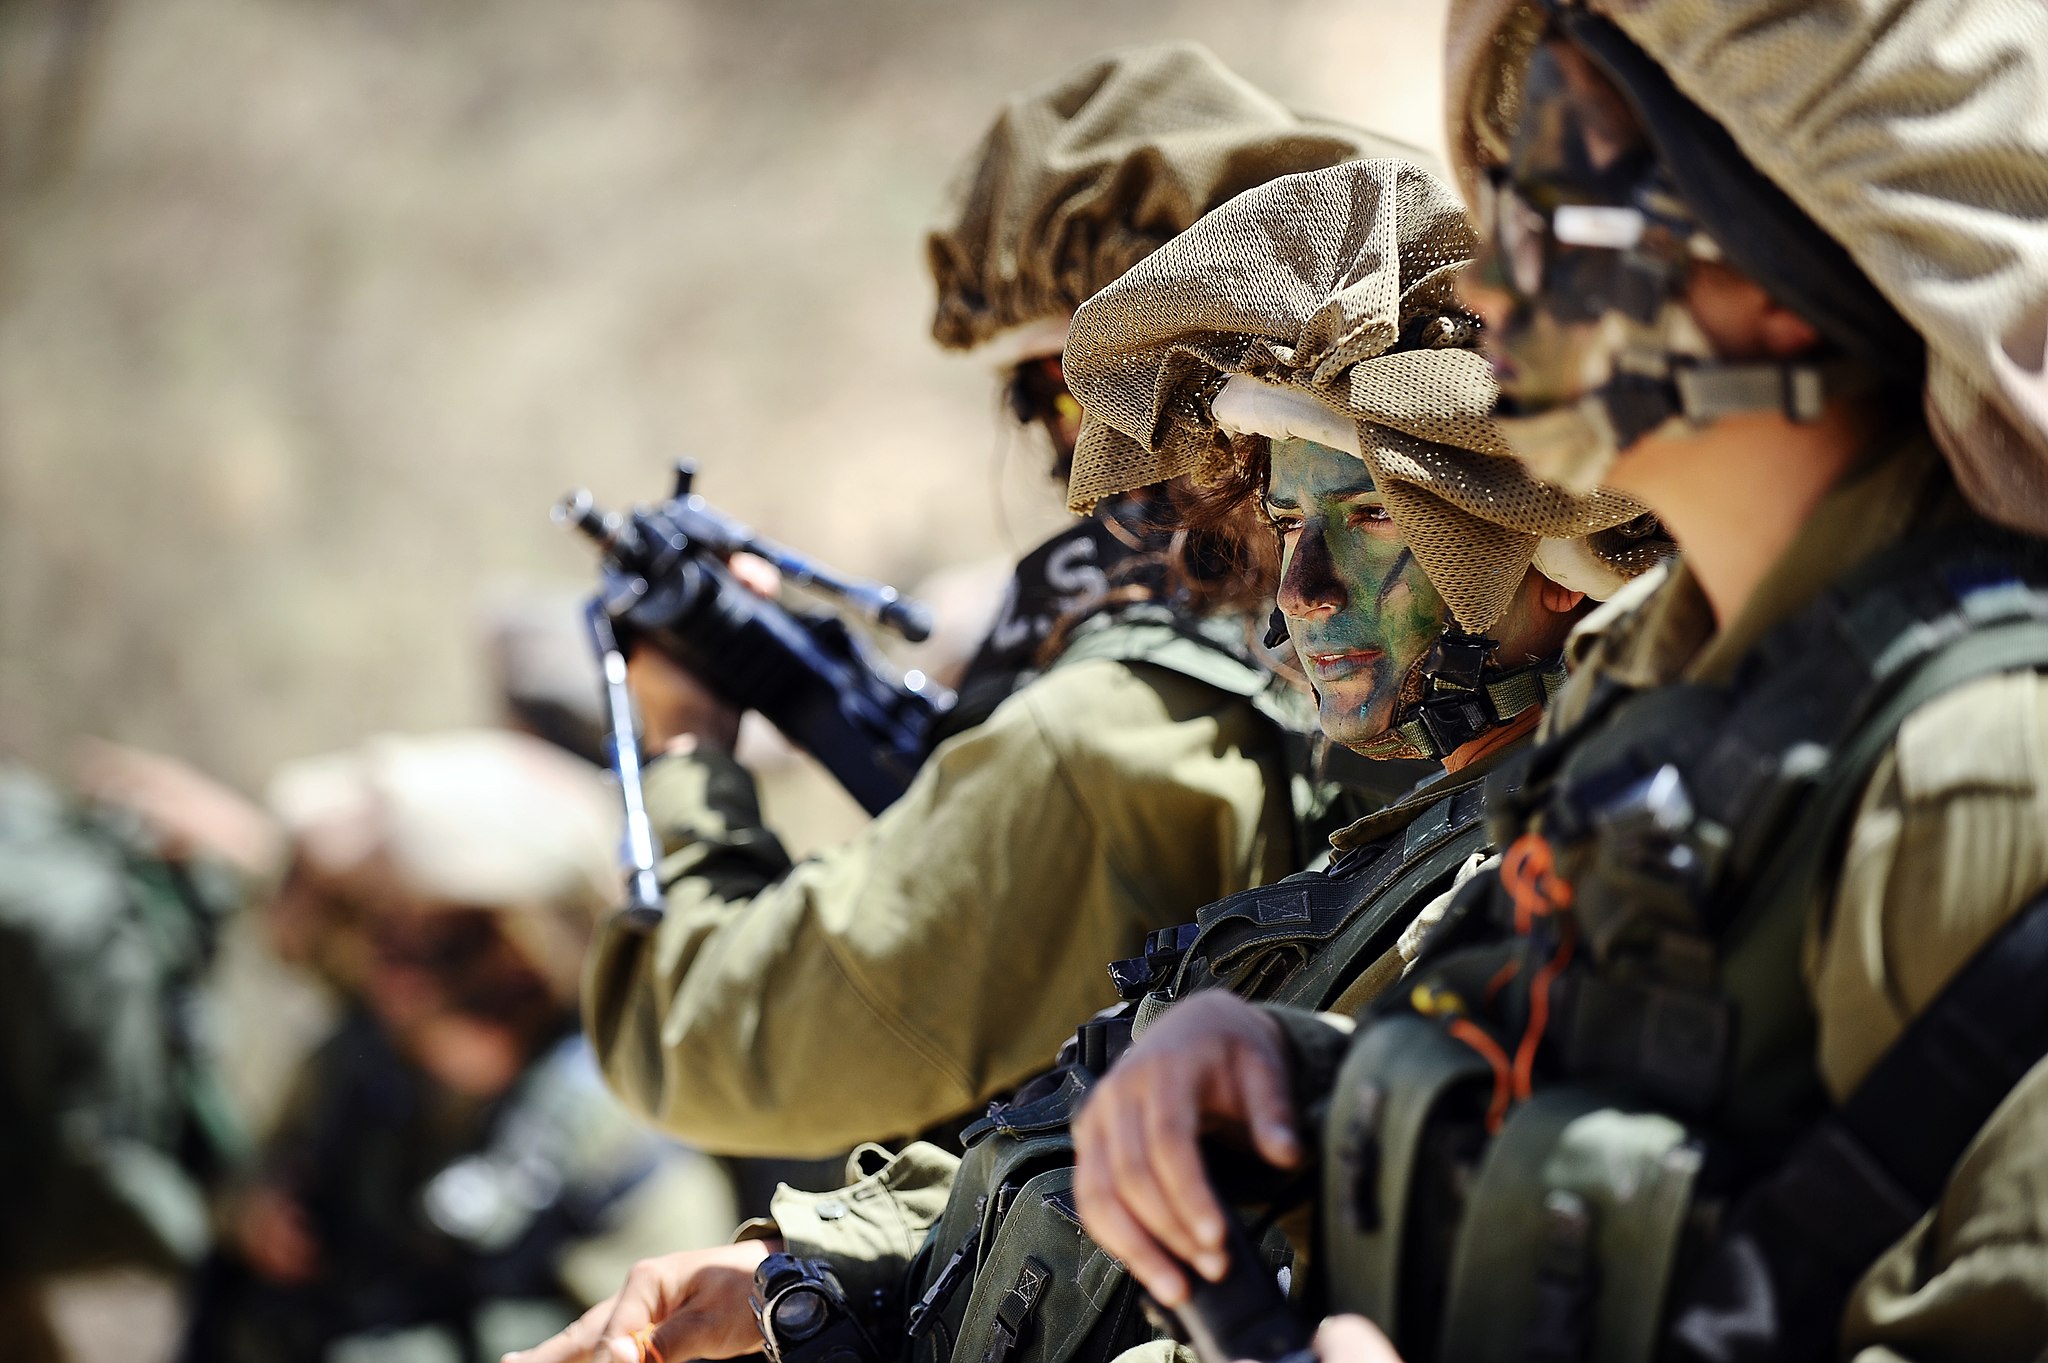 El gasto militar en Israel disminuye por primera vez desde 2009. Foto: Israel Defense Forces/CC BY-SA 3.0 - Wikimedia Commons.